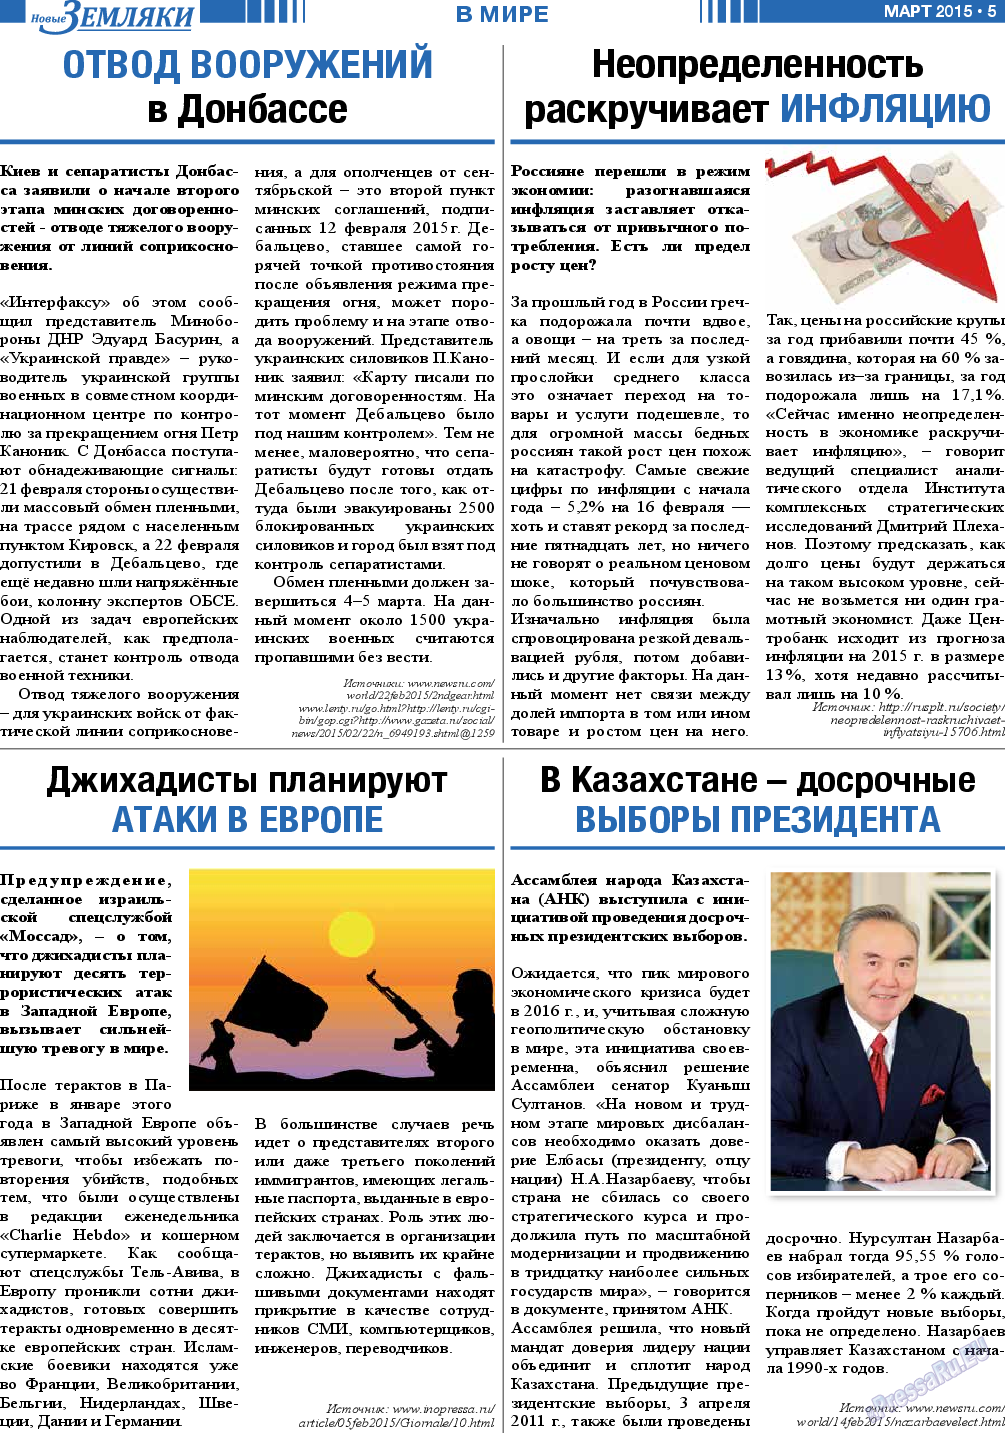 Новые Земляки, газета. 2015 №3 стр.5